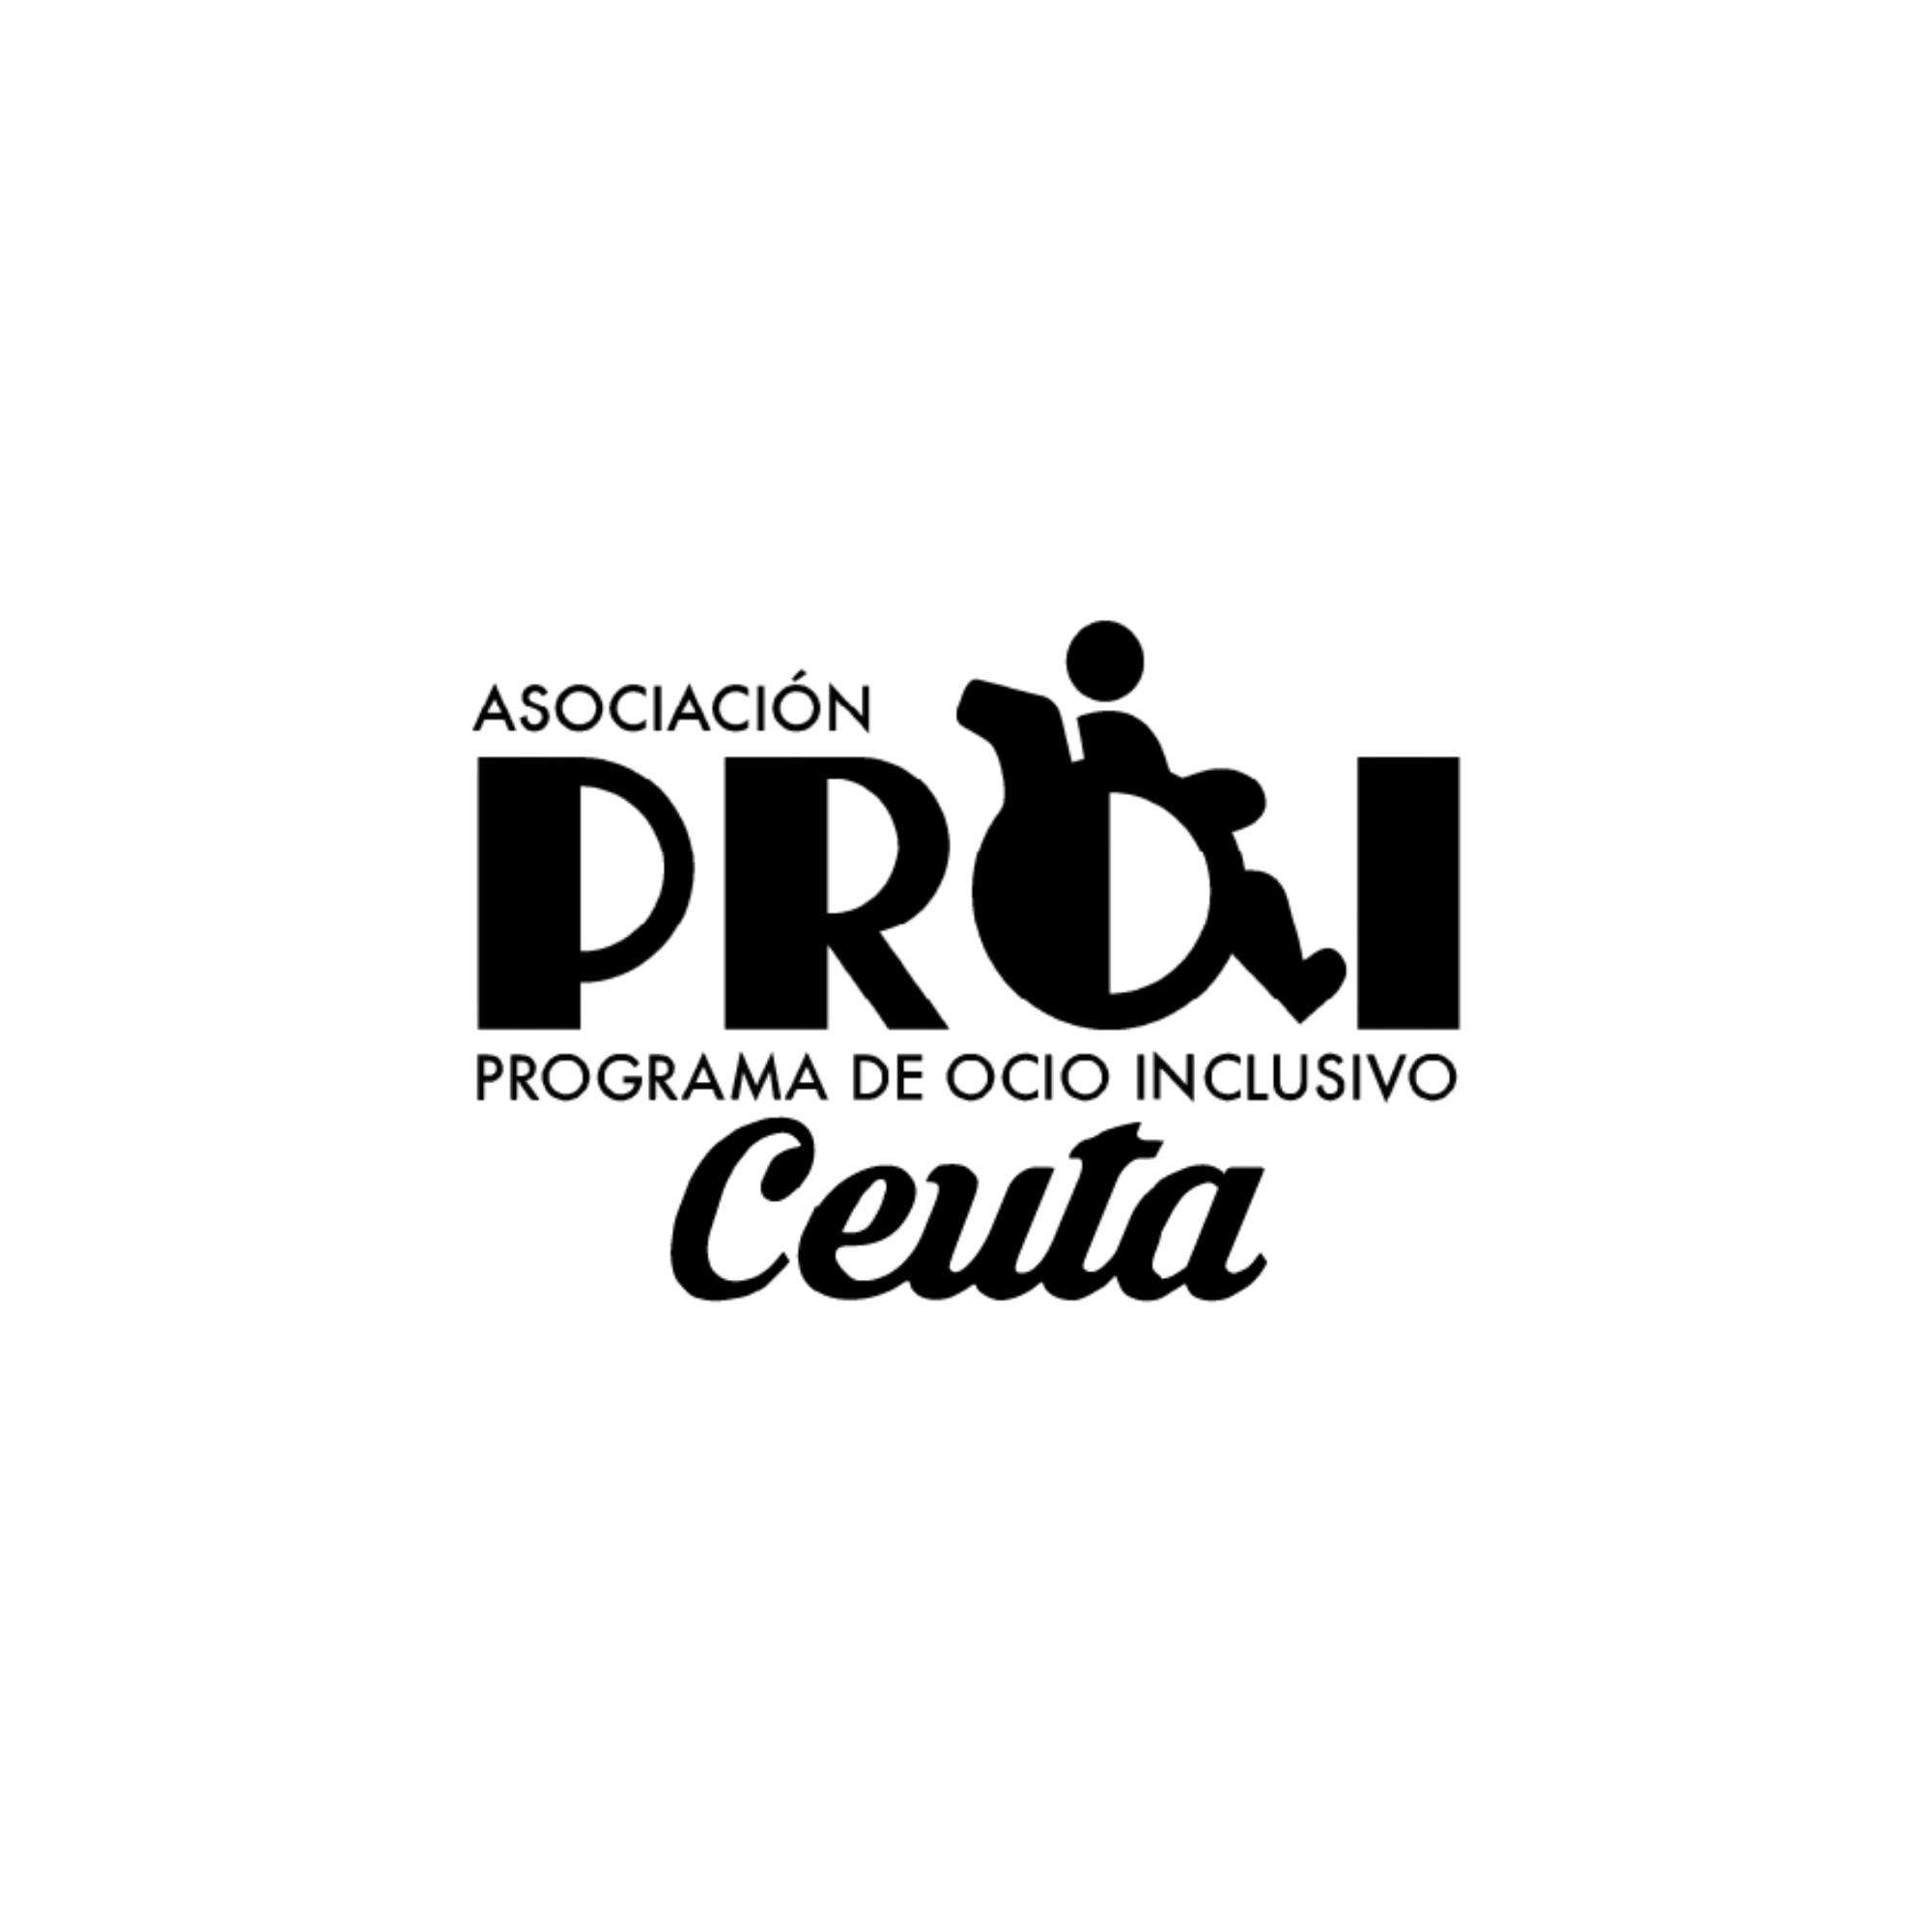 PROI Ceuta se incorpora como nueva entidad del Movimiento ASPACE